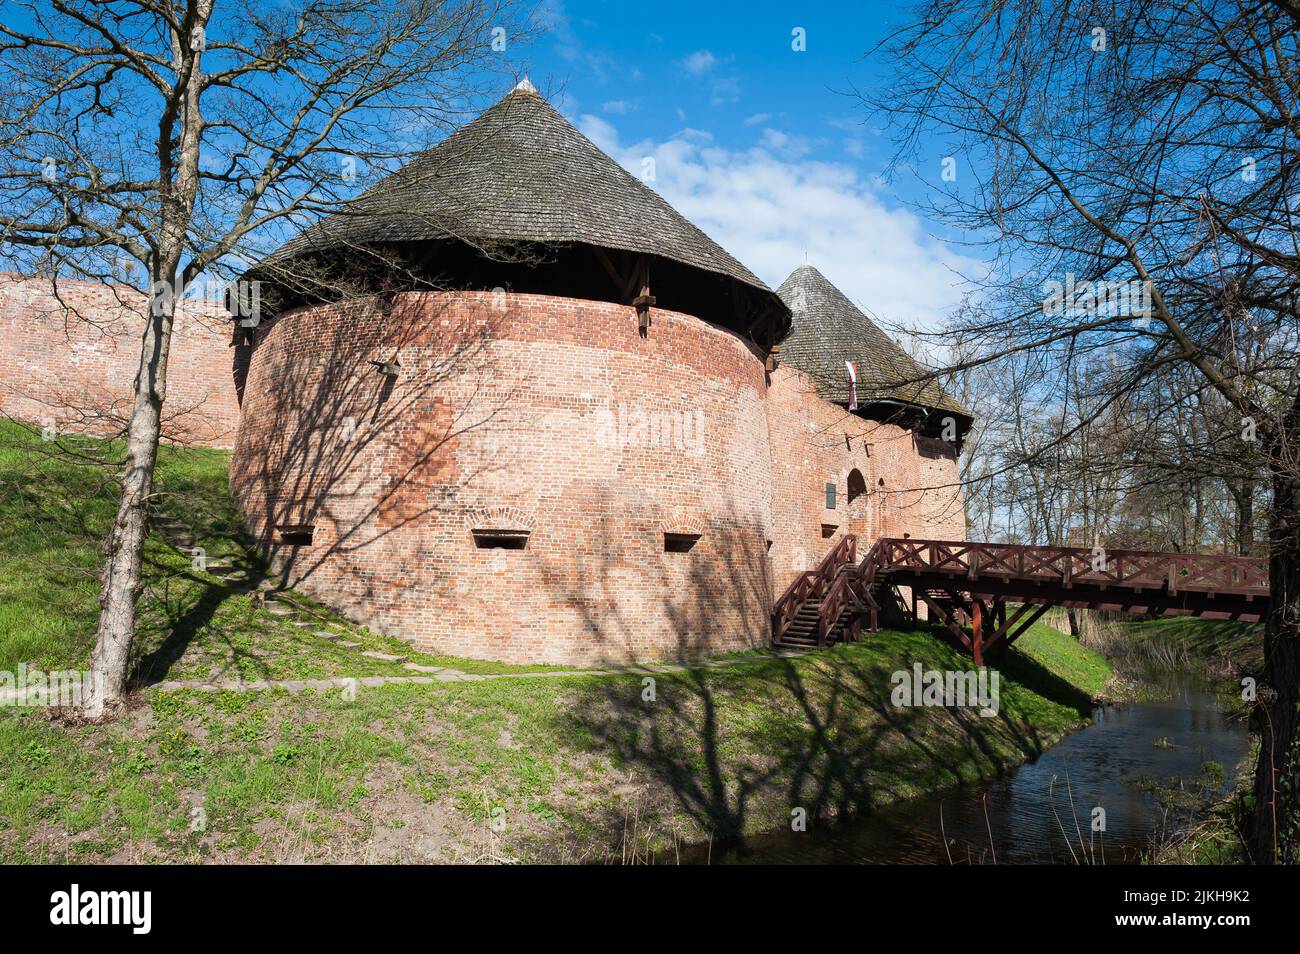 Castle in Miedzyrzecz, Lubusz Voivodeship, Poland Stock Photo